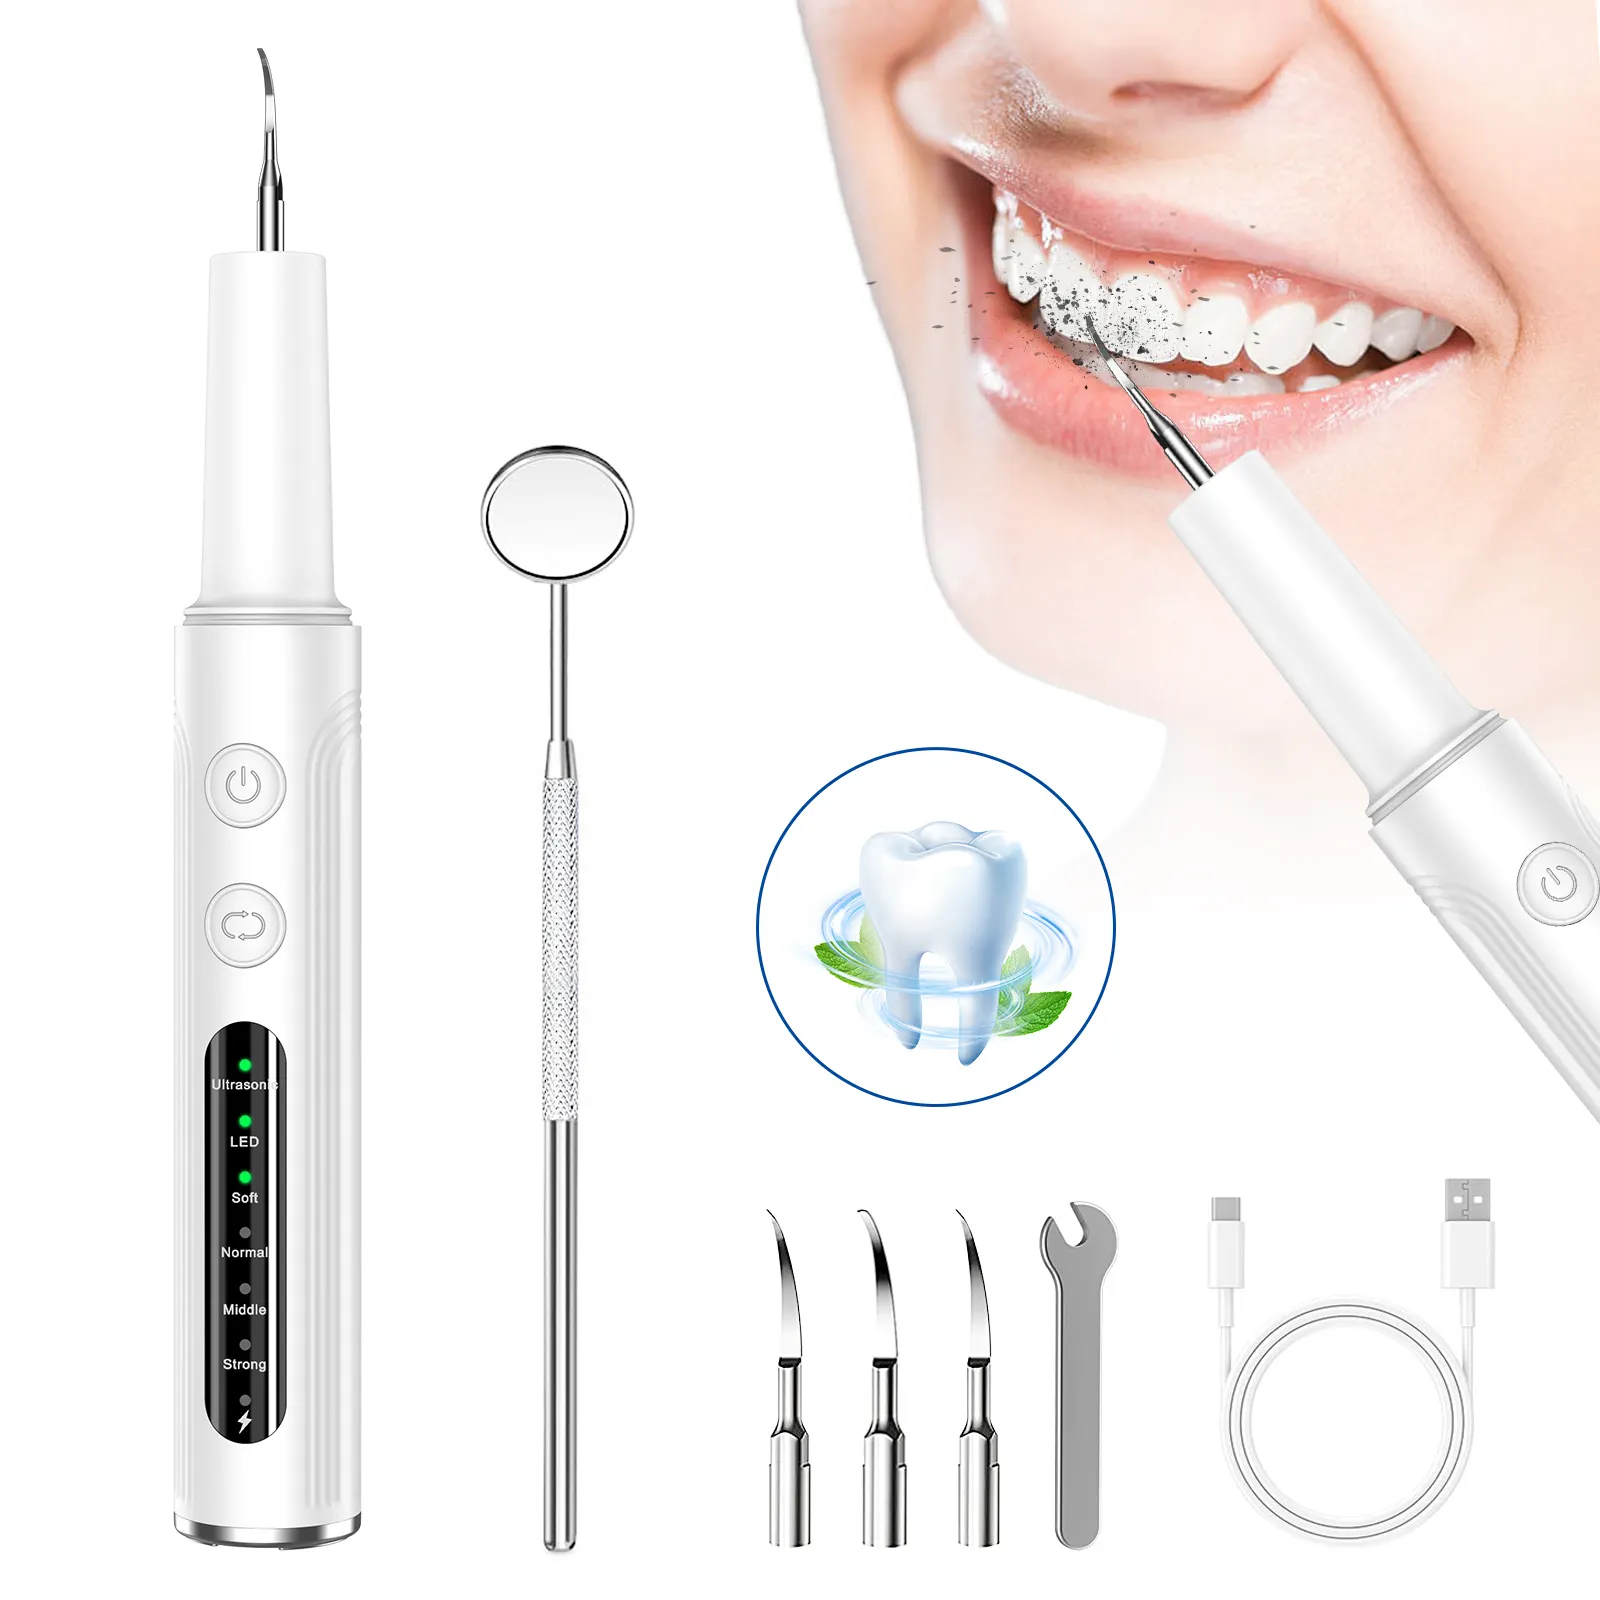 أدوات عناية بالأسنان منظف للأسنان منظف للأسنان بالموجات فوق الصوتية مزيل لطبقة الأسنان